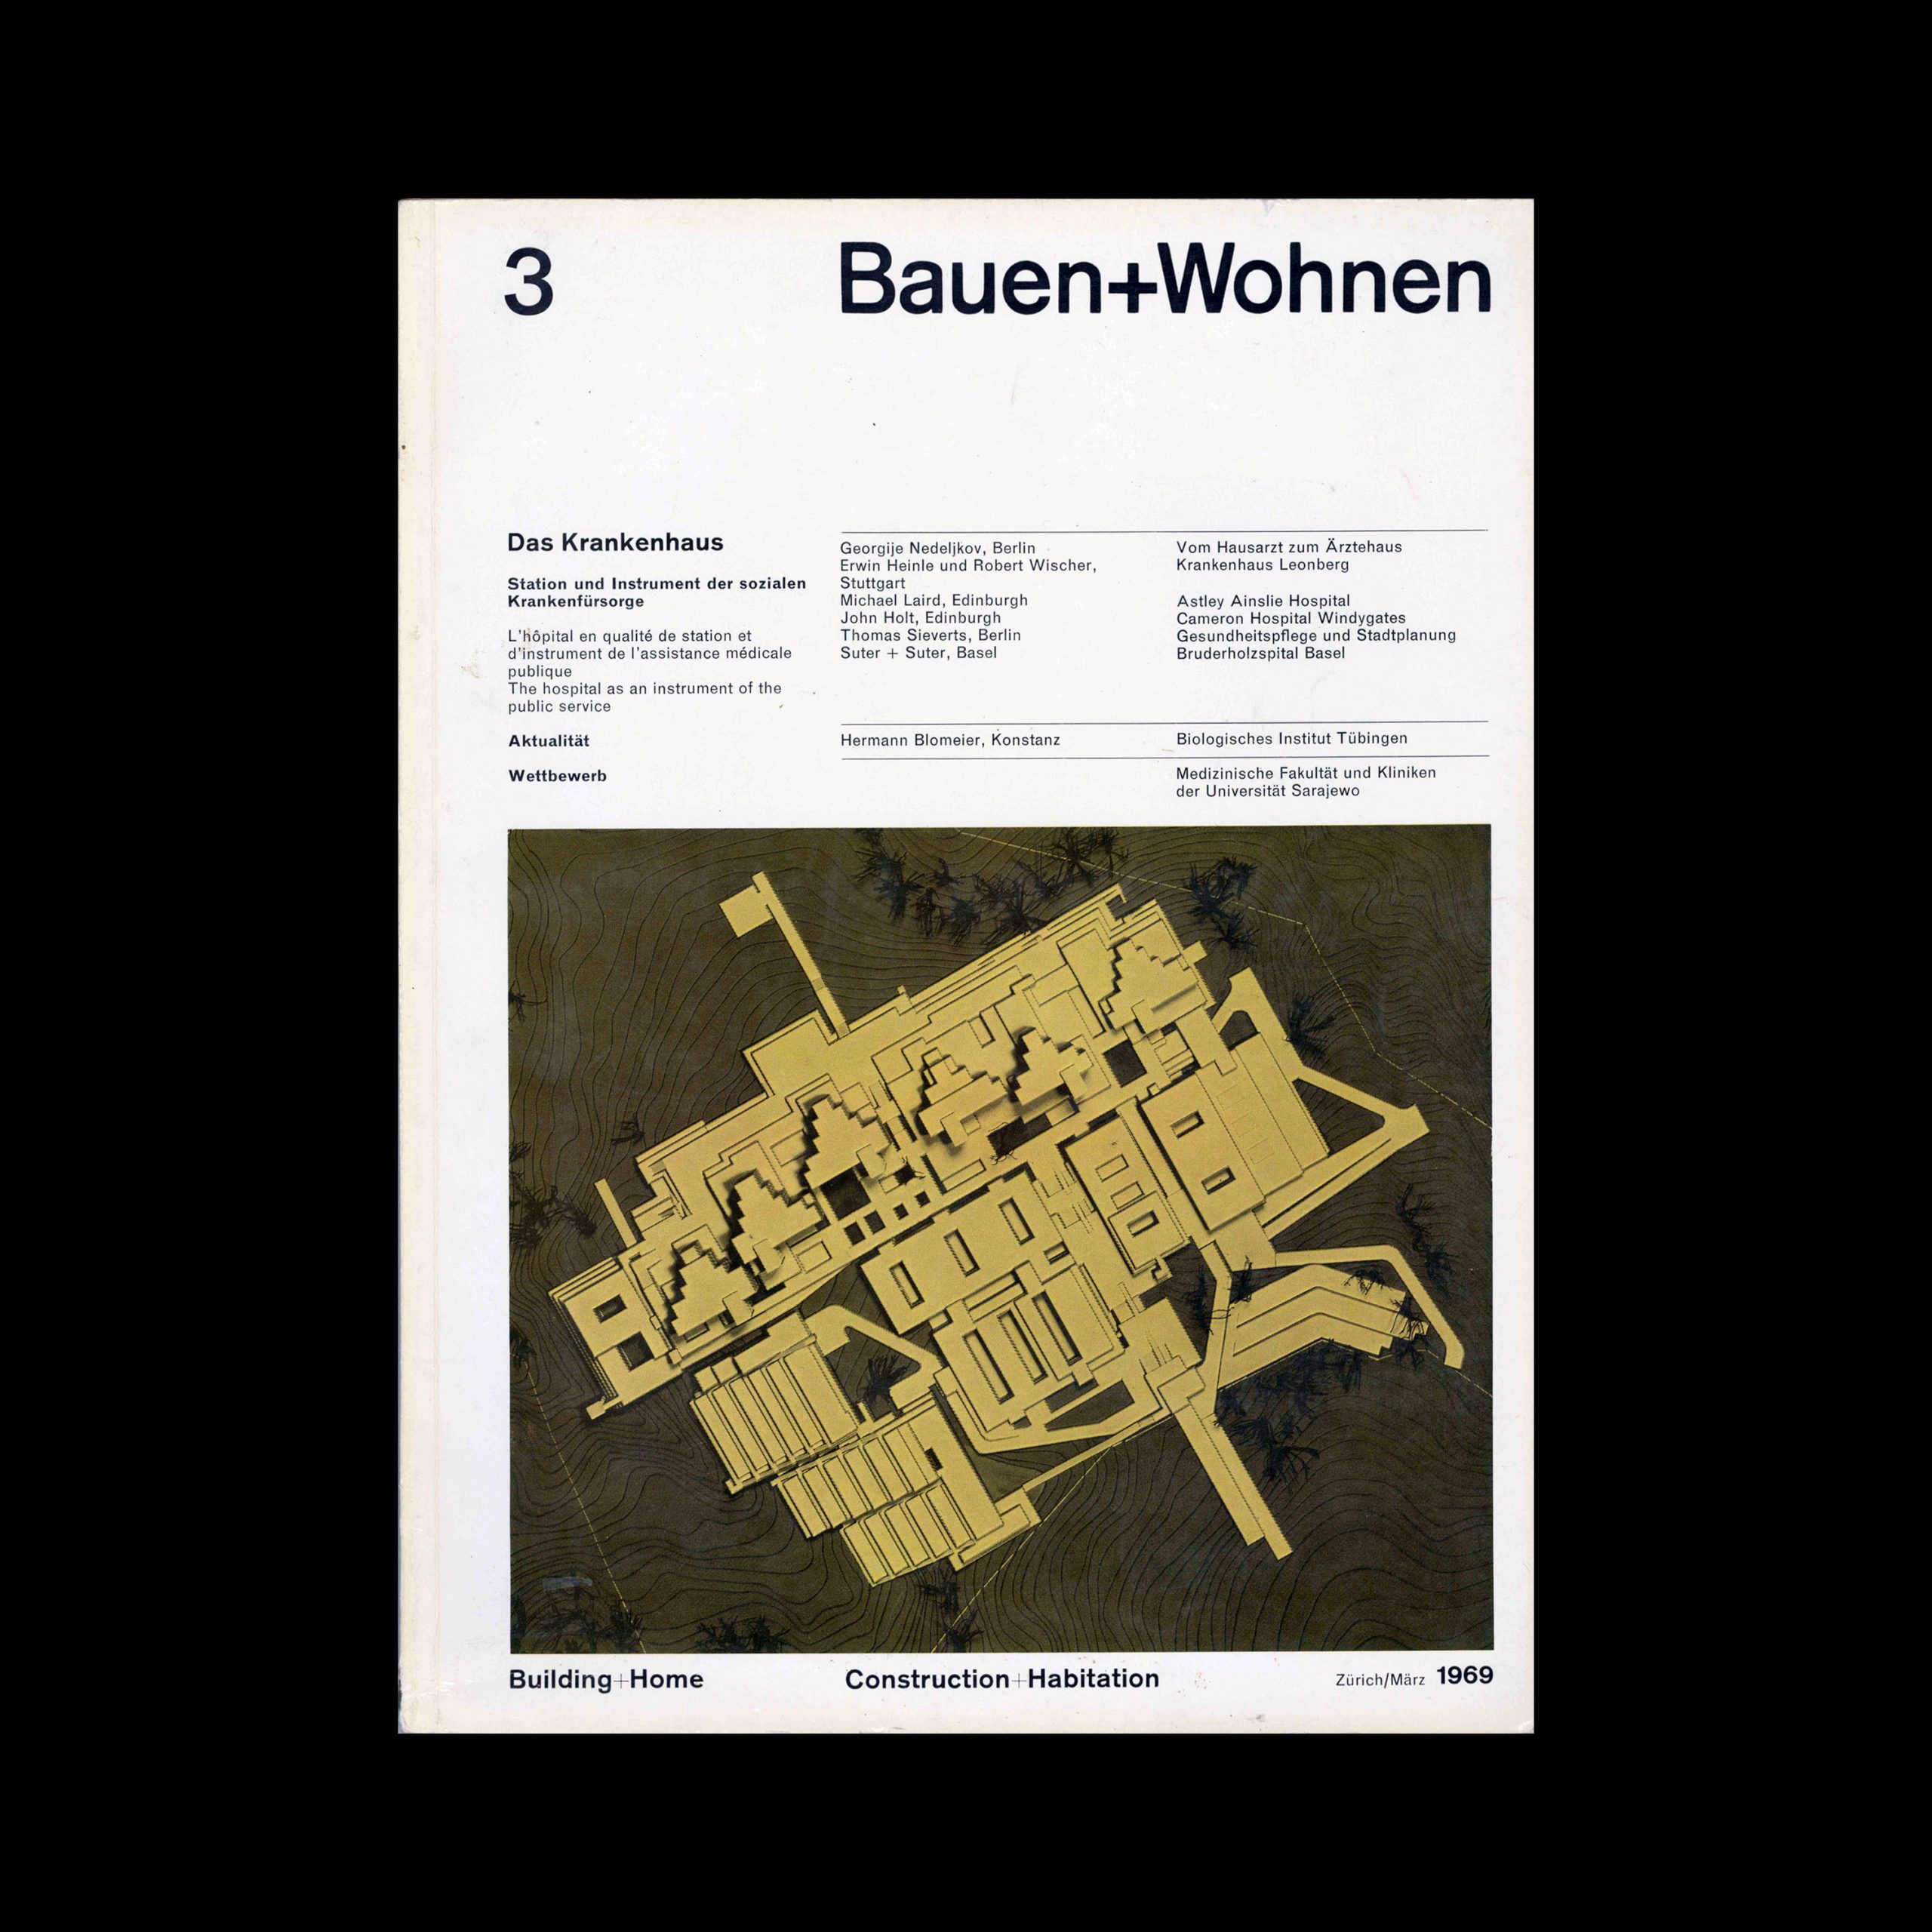 Bauen+Wohnen, 3, 1969. Designed by Emil Maurer